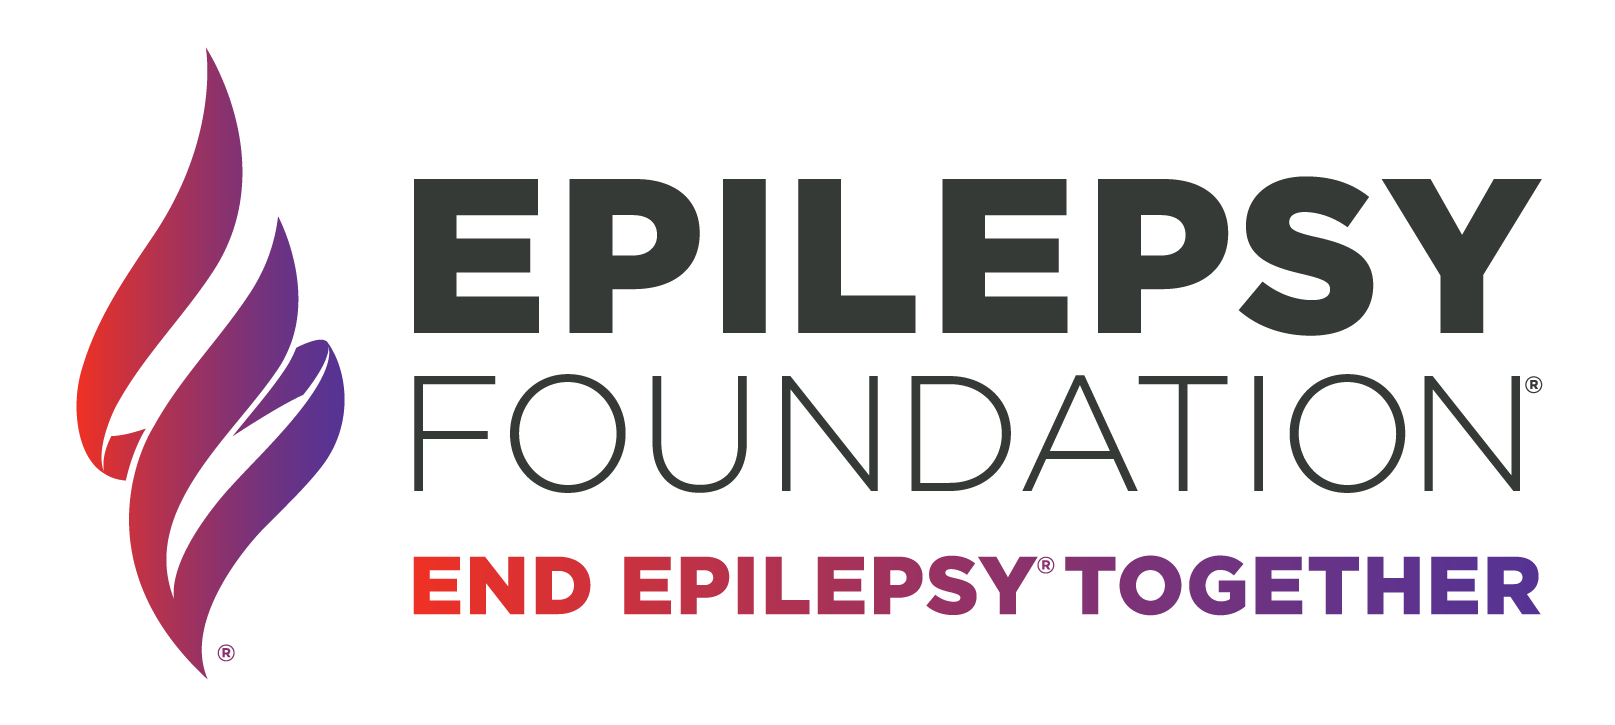 www.epilepsy.com